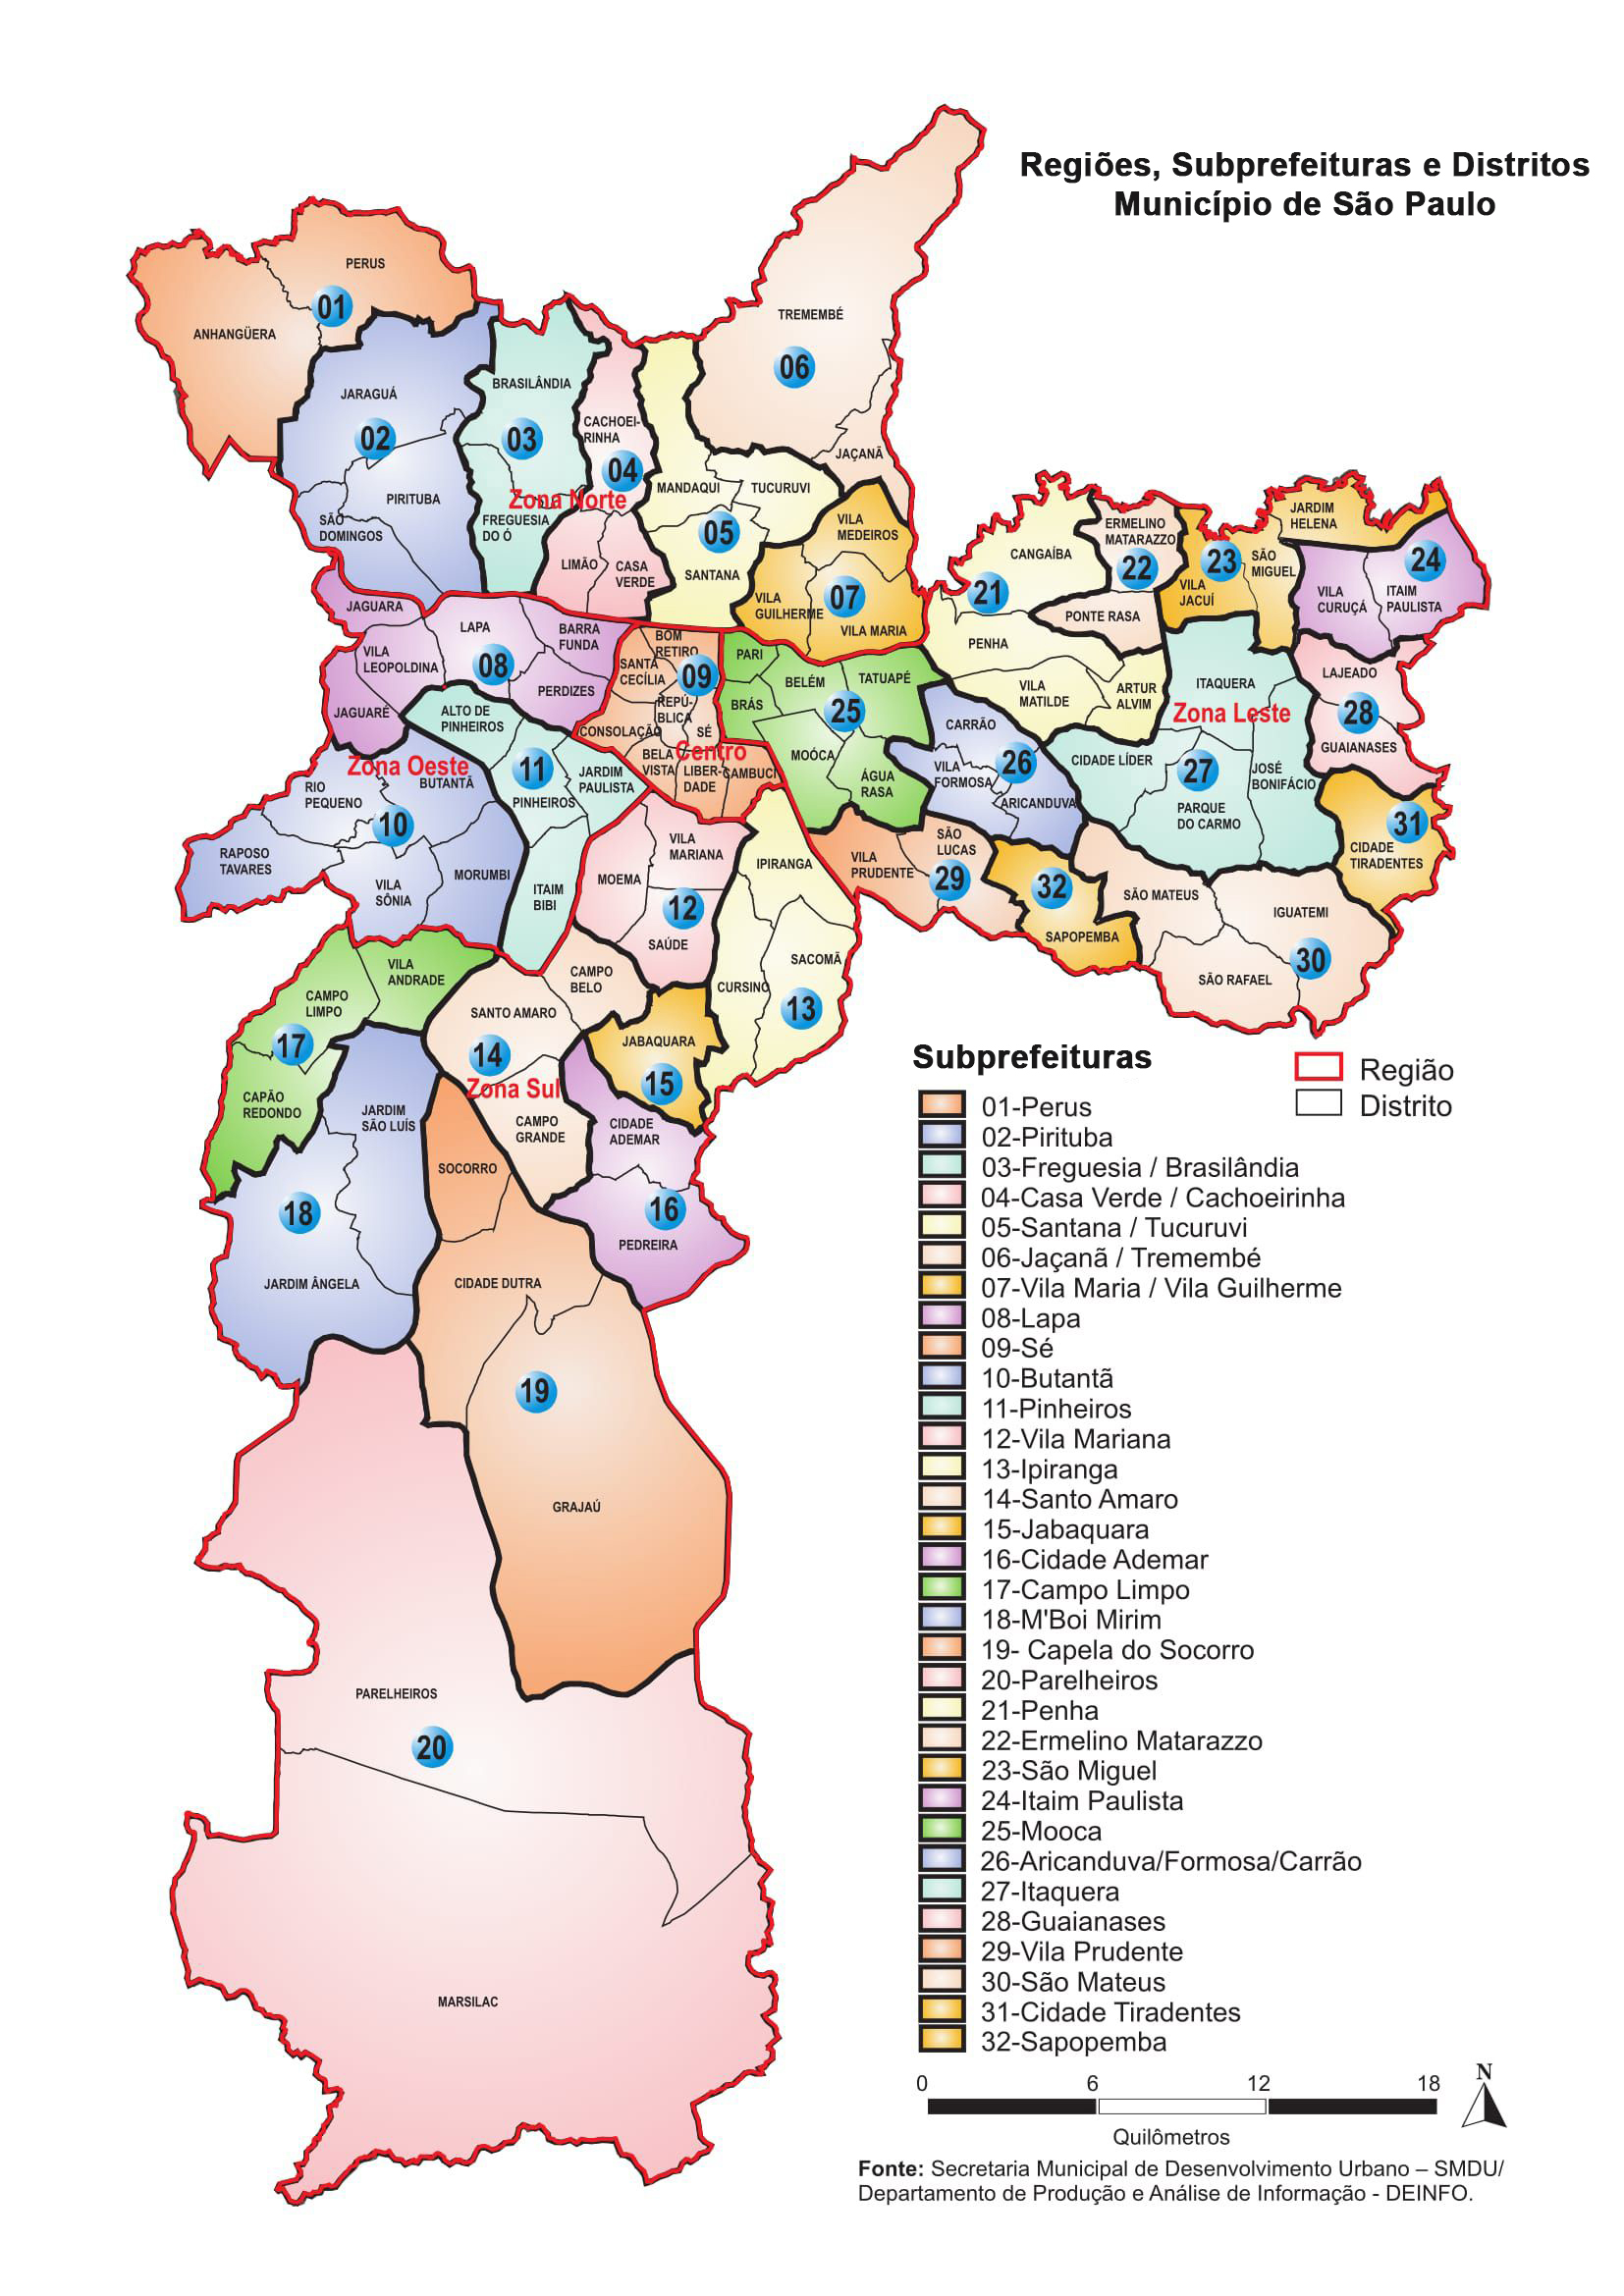 map of subprefeituras and distritos